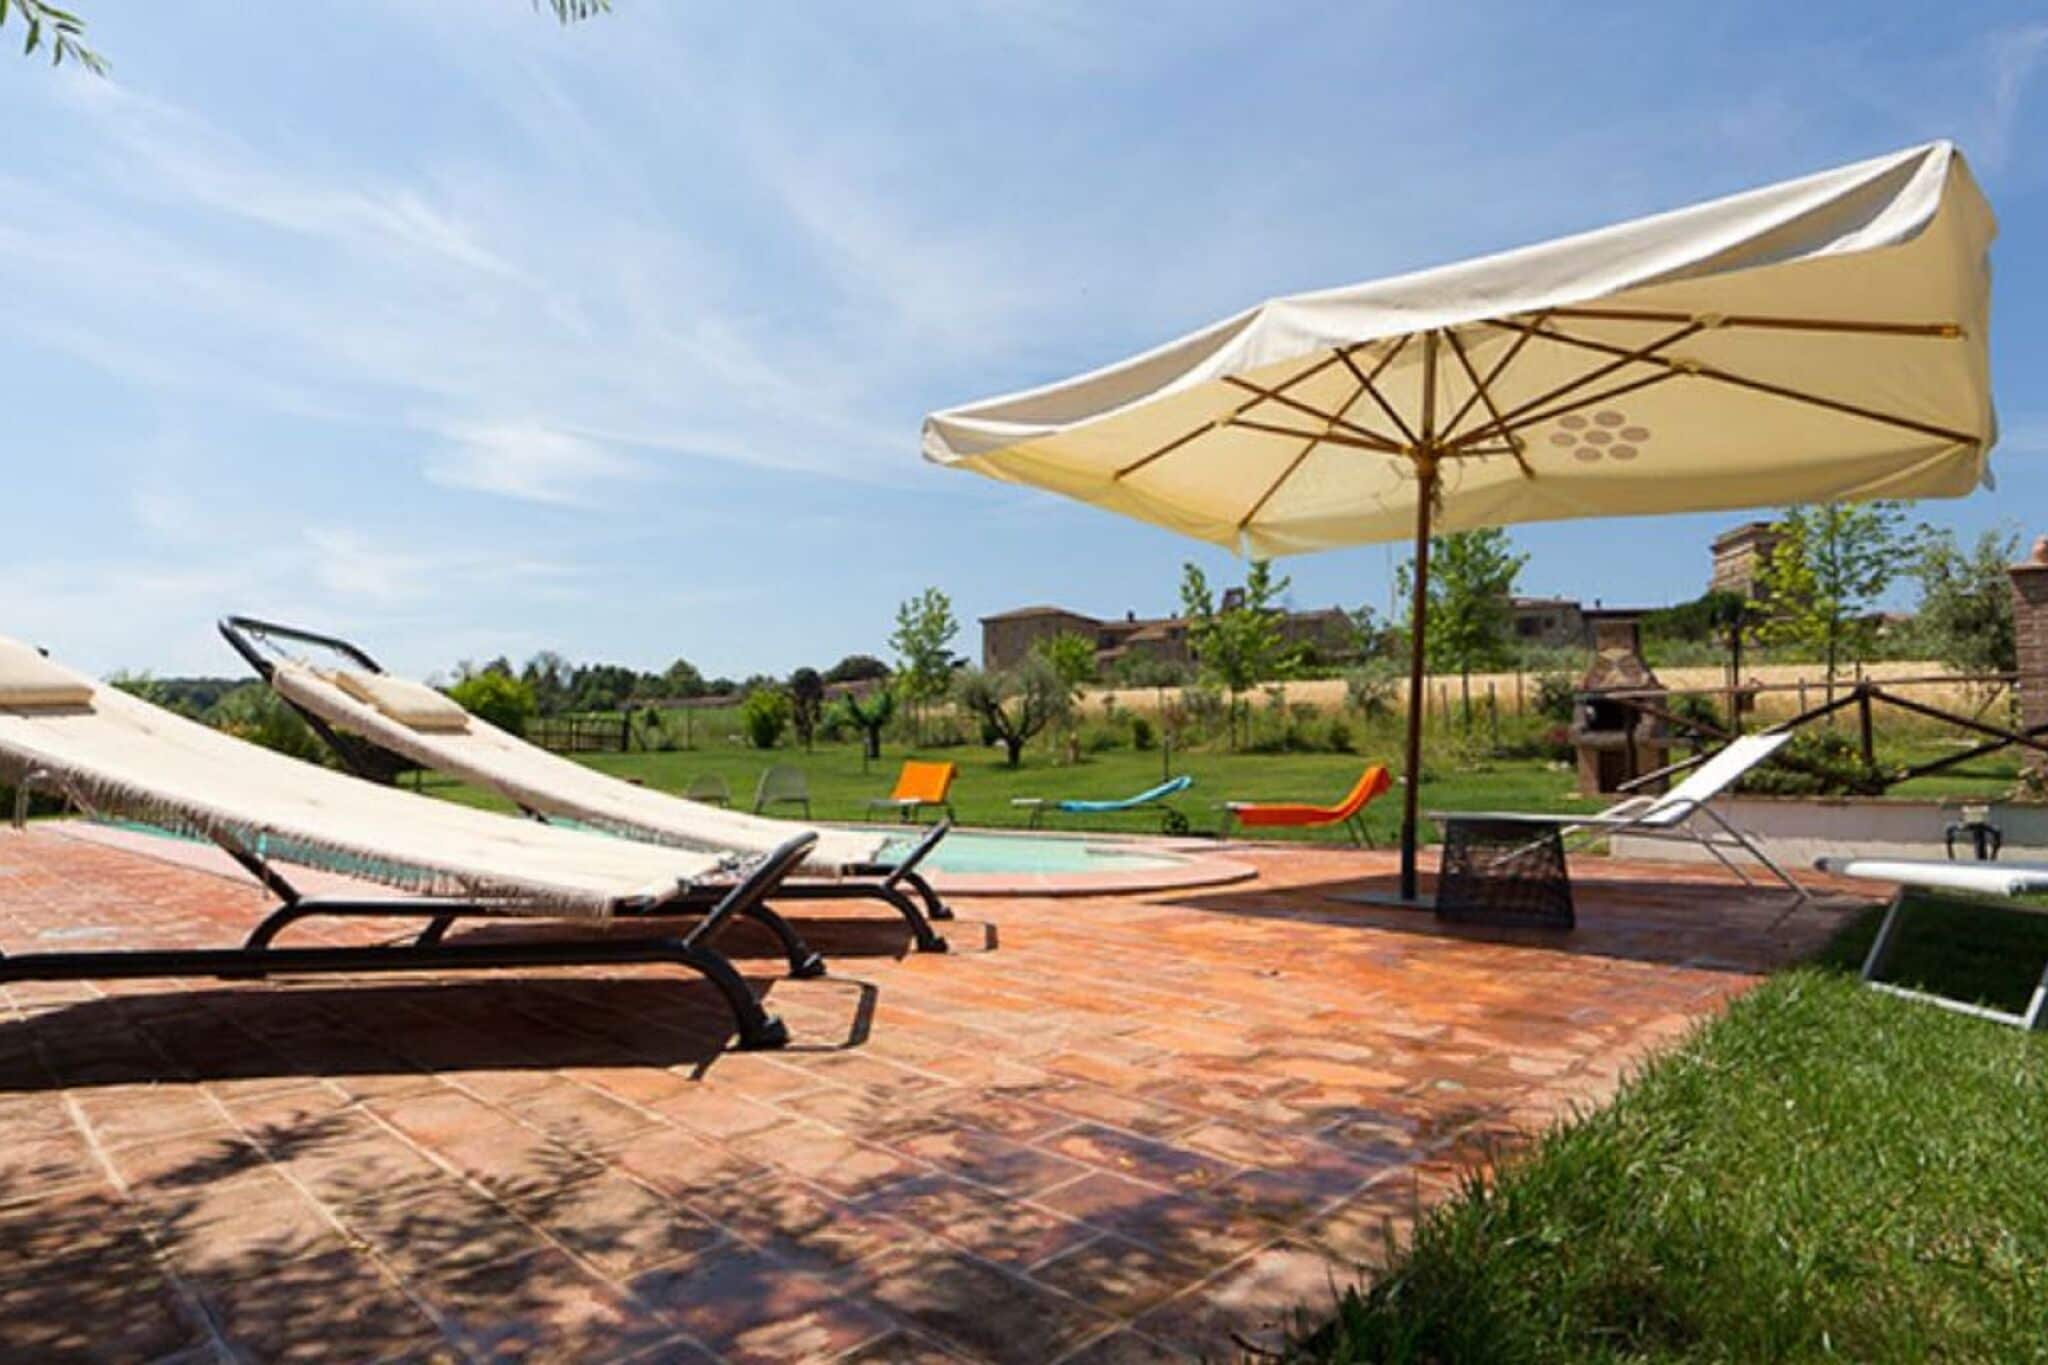 Maison de vacances somptueuse à Marsciano avec piscine